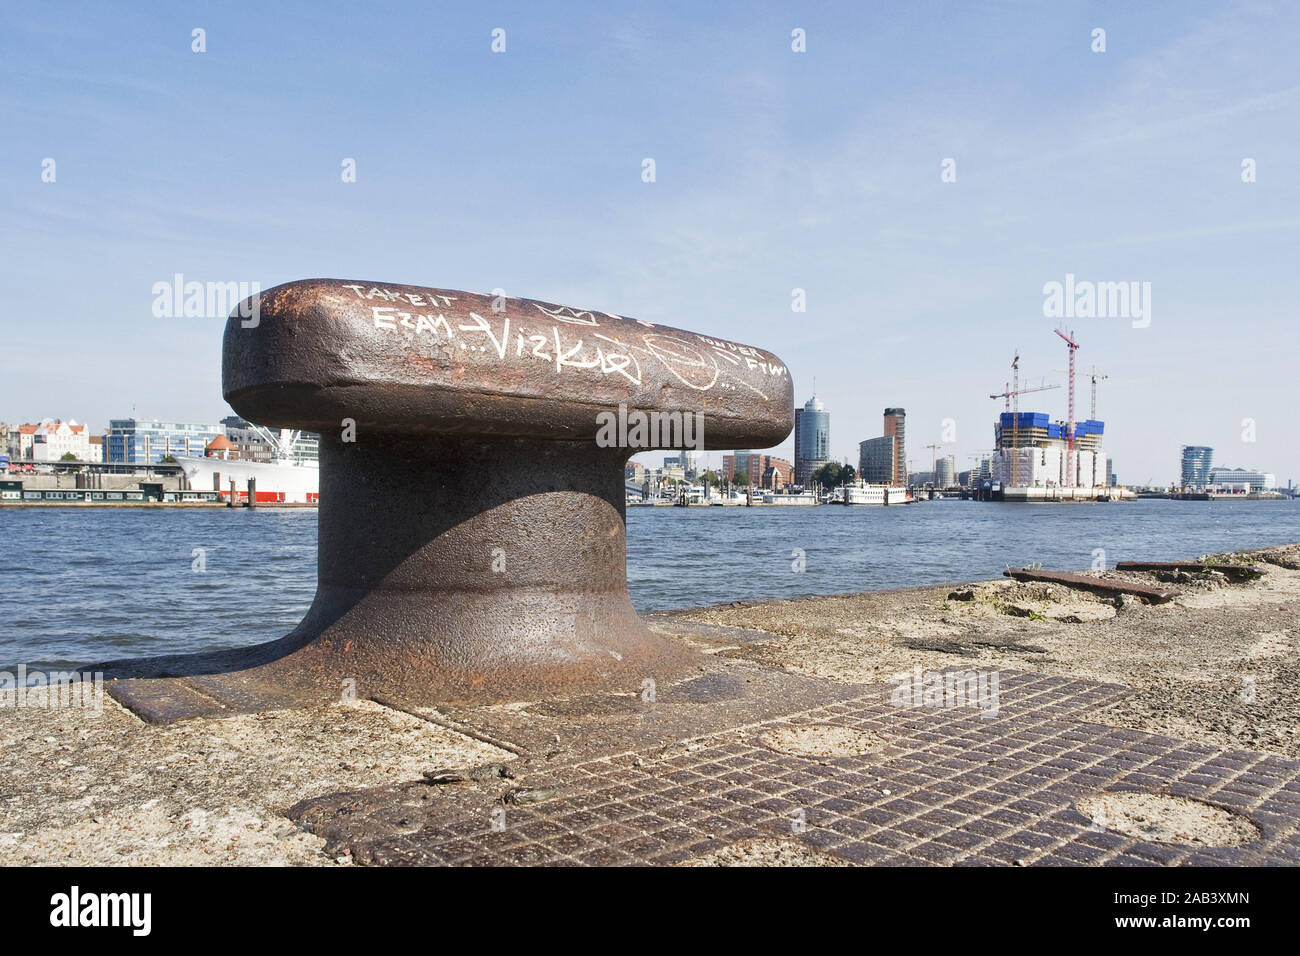 Poller im Hamburger Hafen mit Blick auf die entstehende Elbphilharmonie |Bollard nel porto di Amburgo con una vista della emergente Elbphilharmonie| Foto Stock